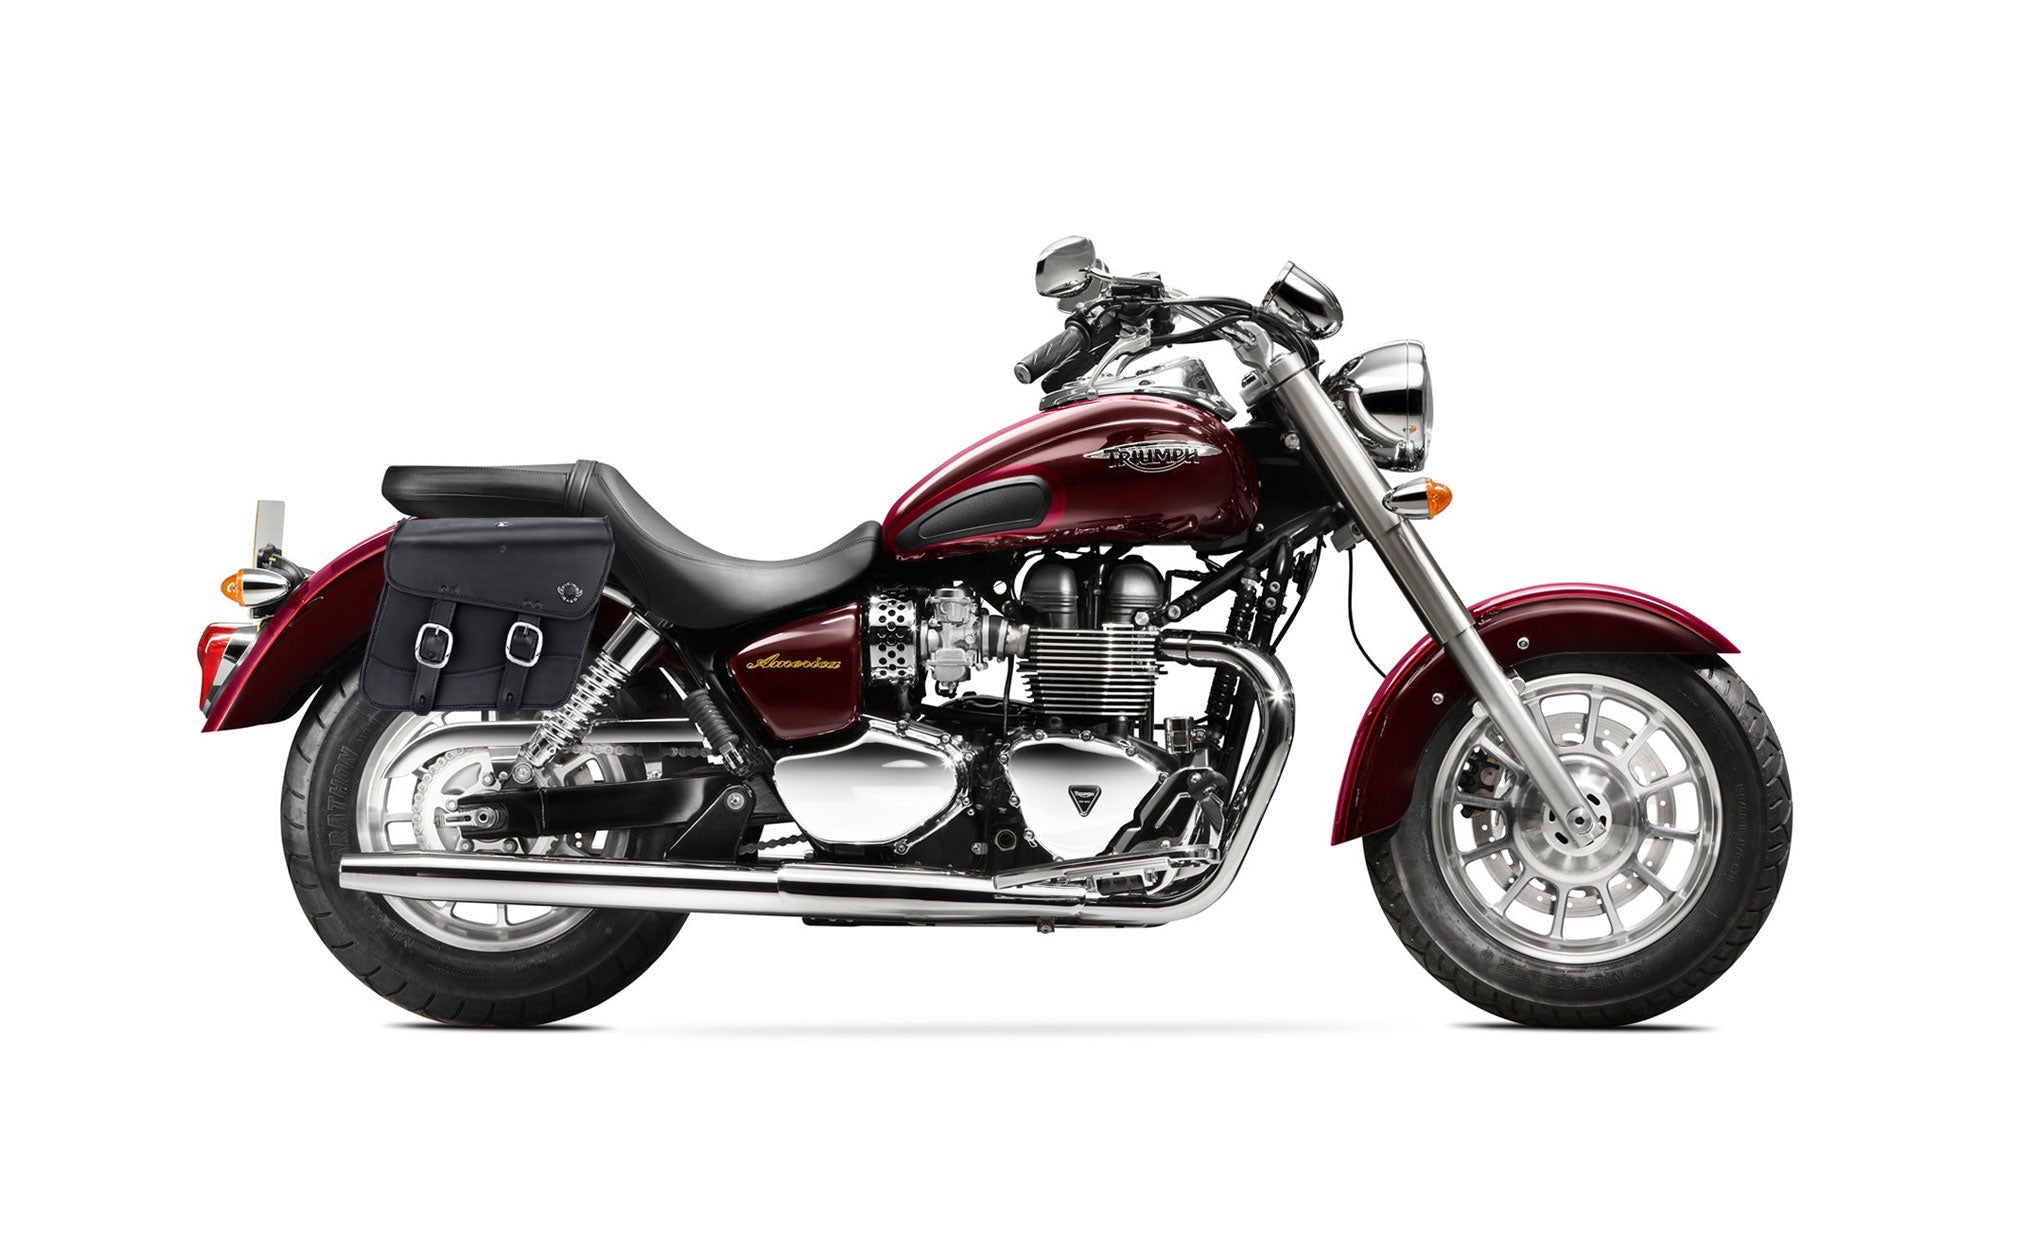 Viking Thor Medium Triumph America Leather Motorcycle Saddlebags on Bike Photo @expand